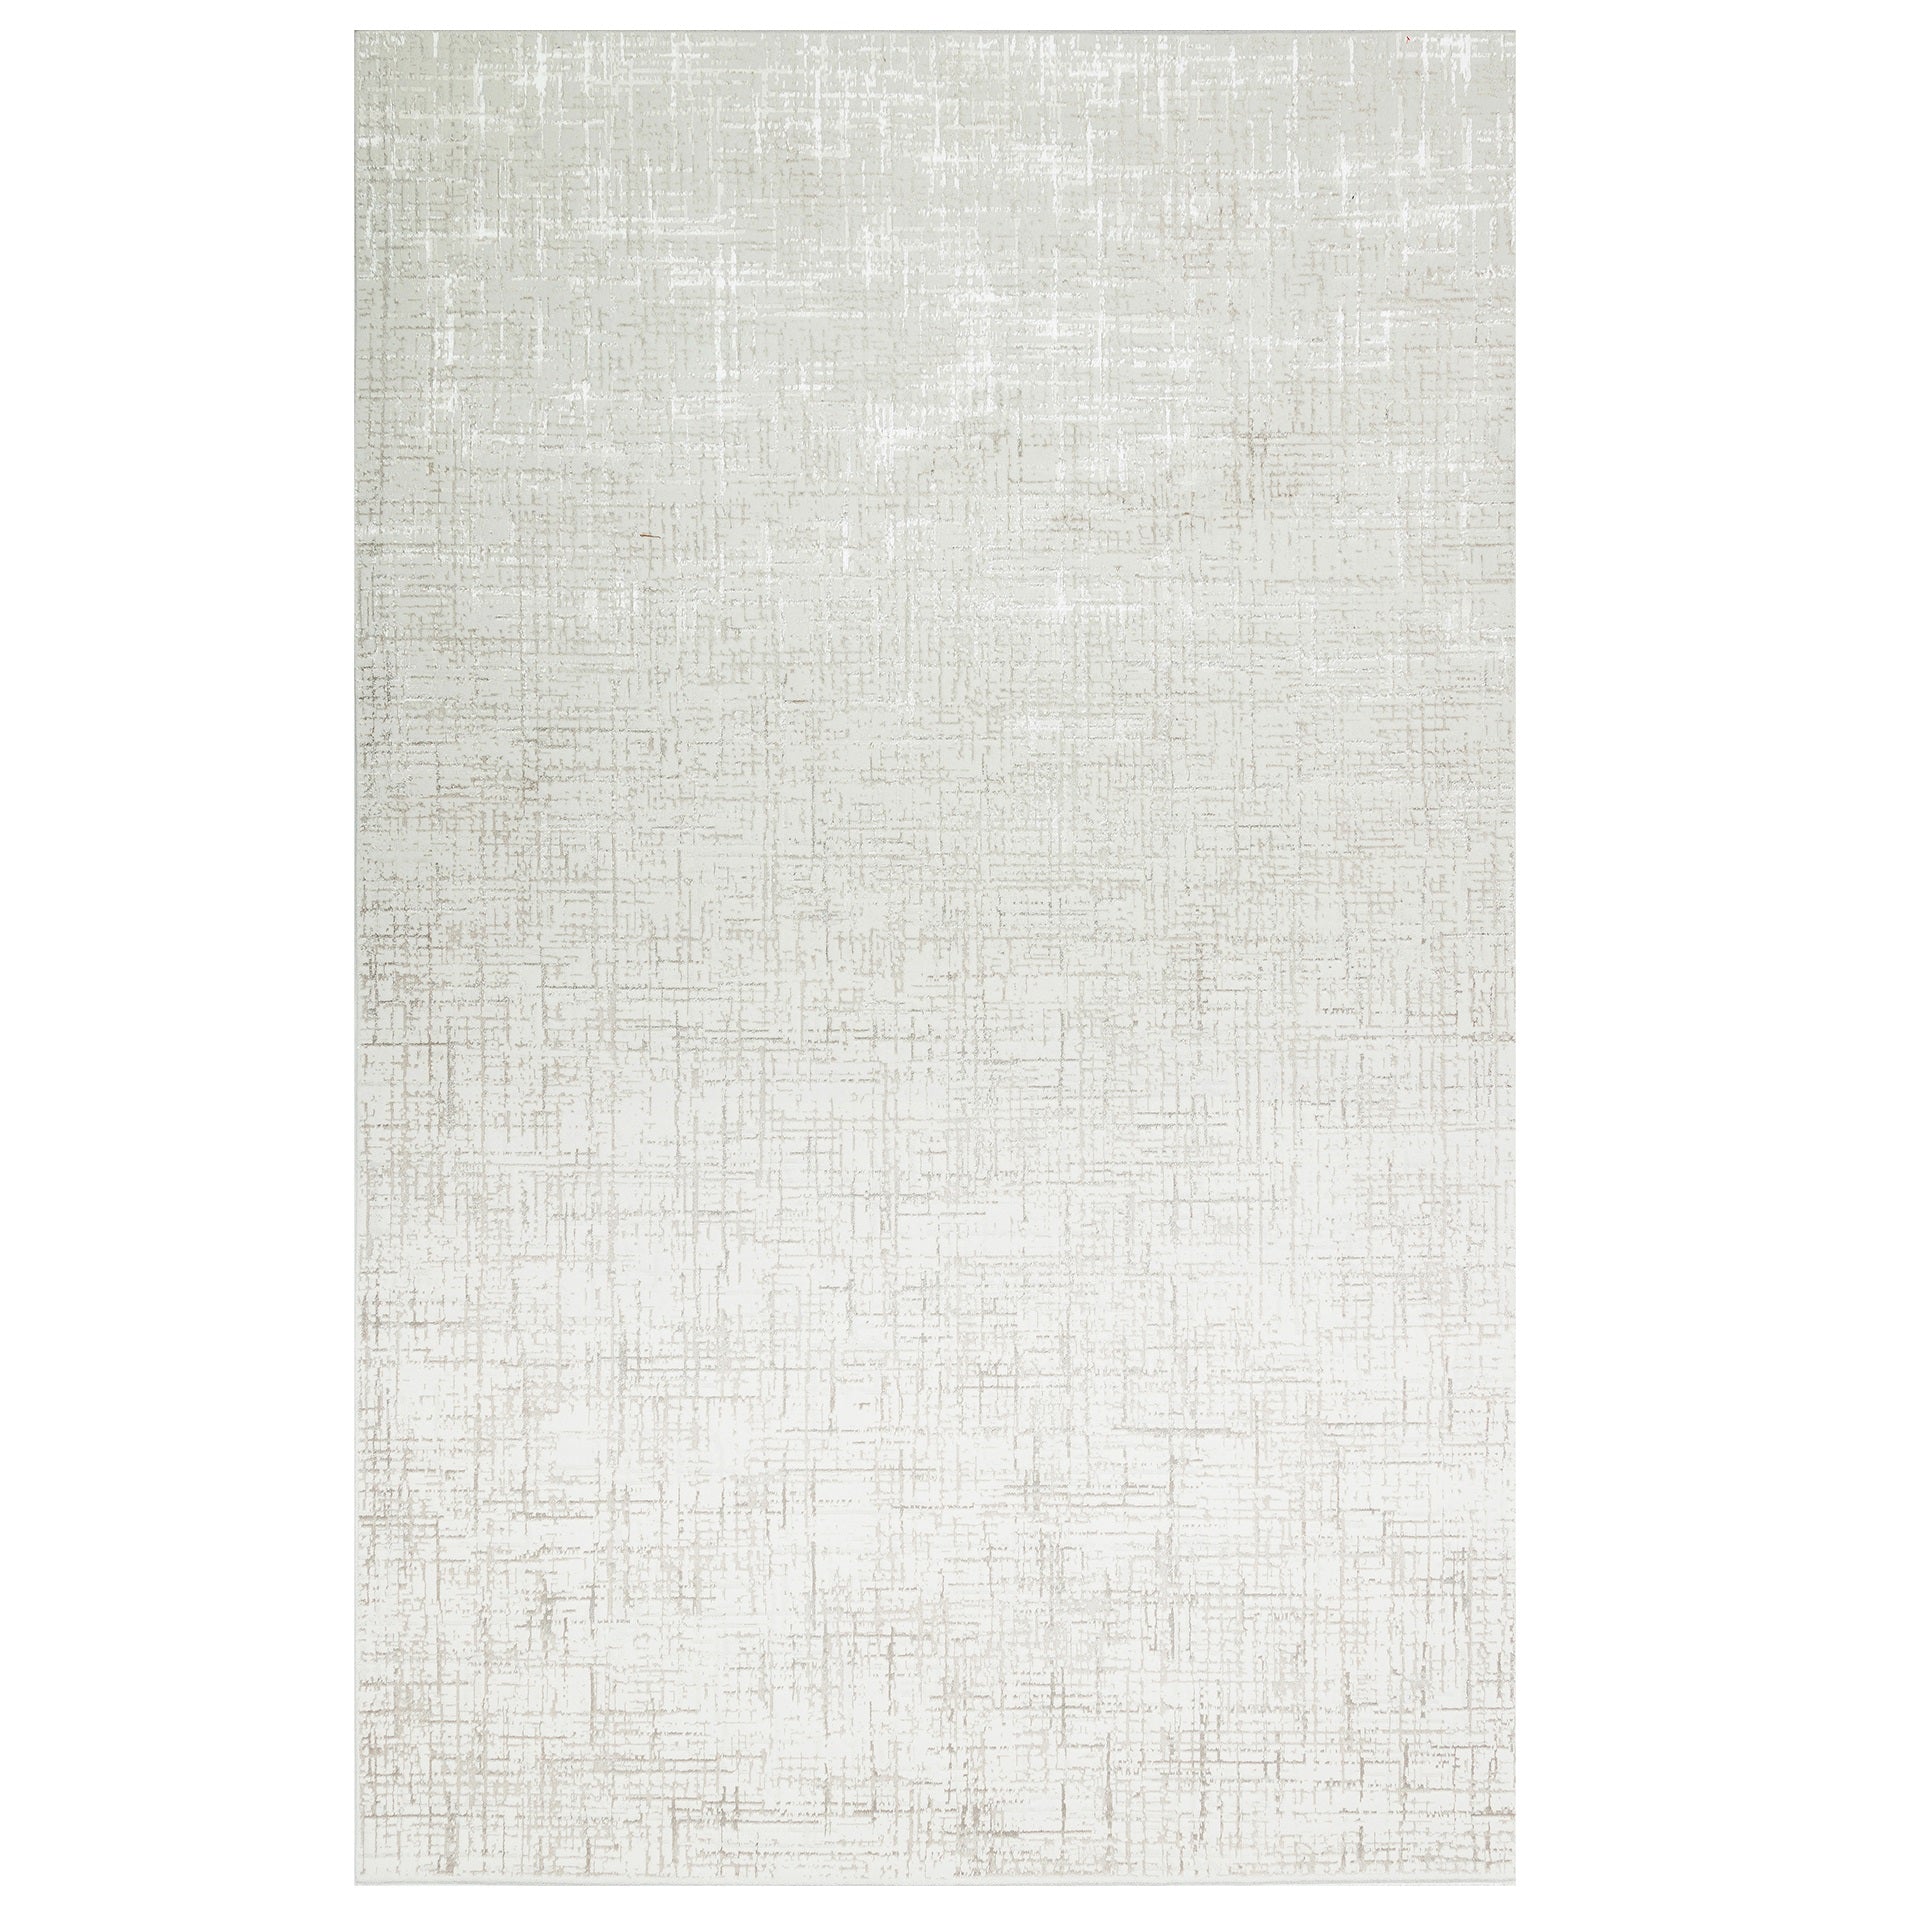 Teppich Byblos 200x285 cm im Elfenbeinton von Richmond; rechteckiger Teppich aus glänzendem Material.